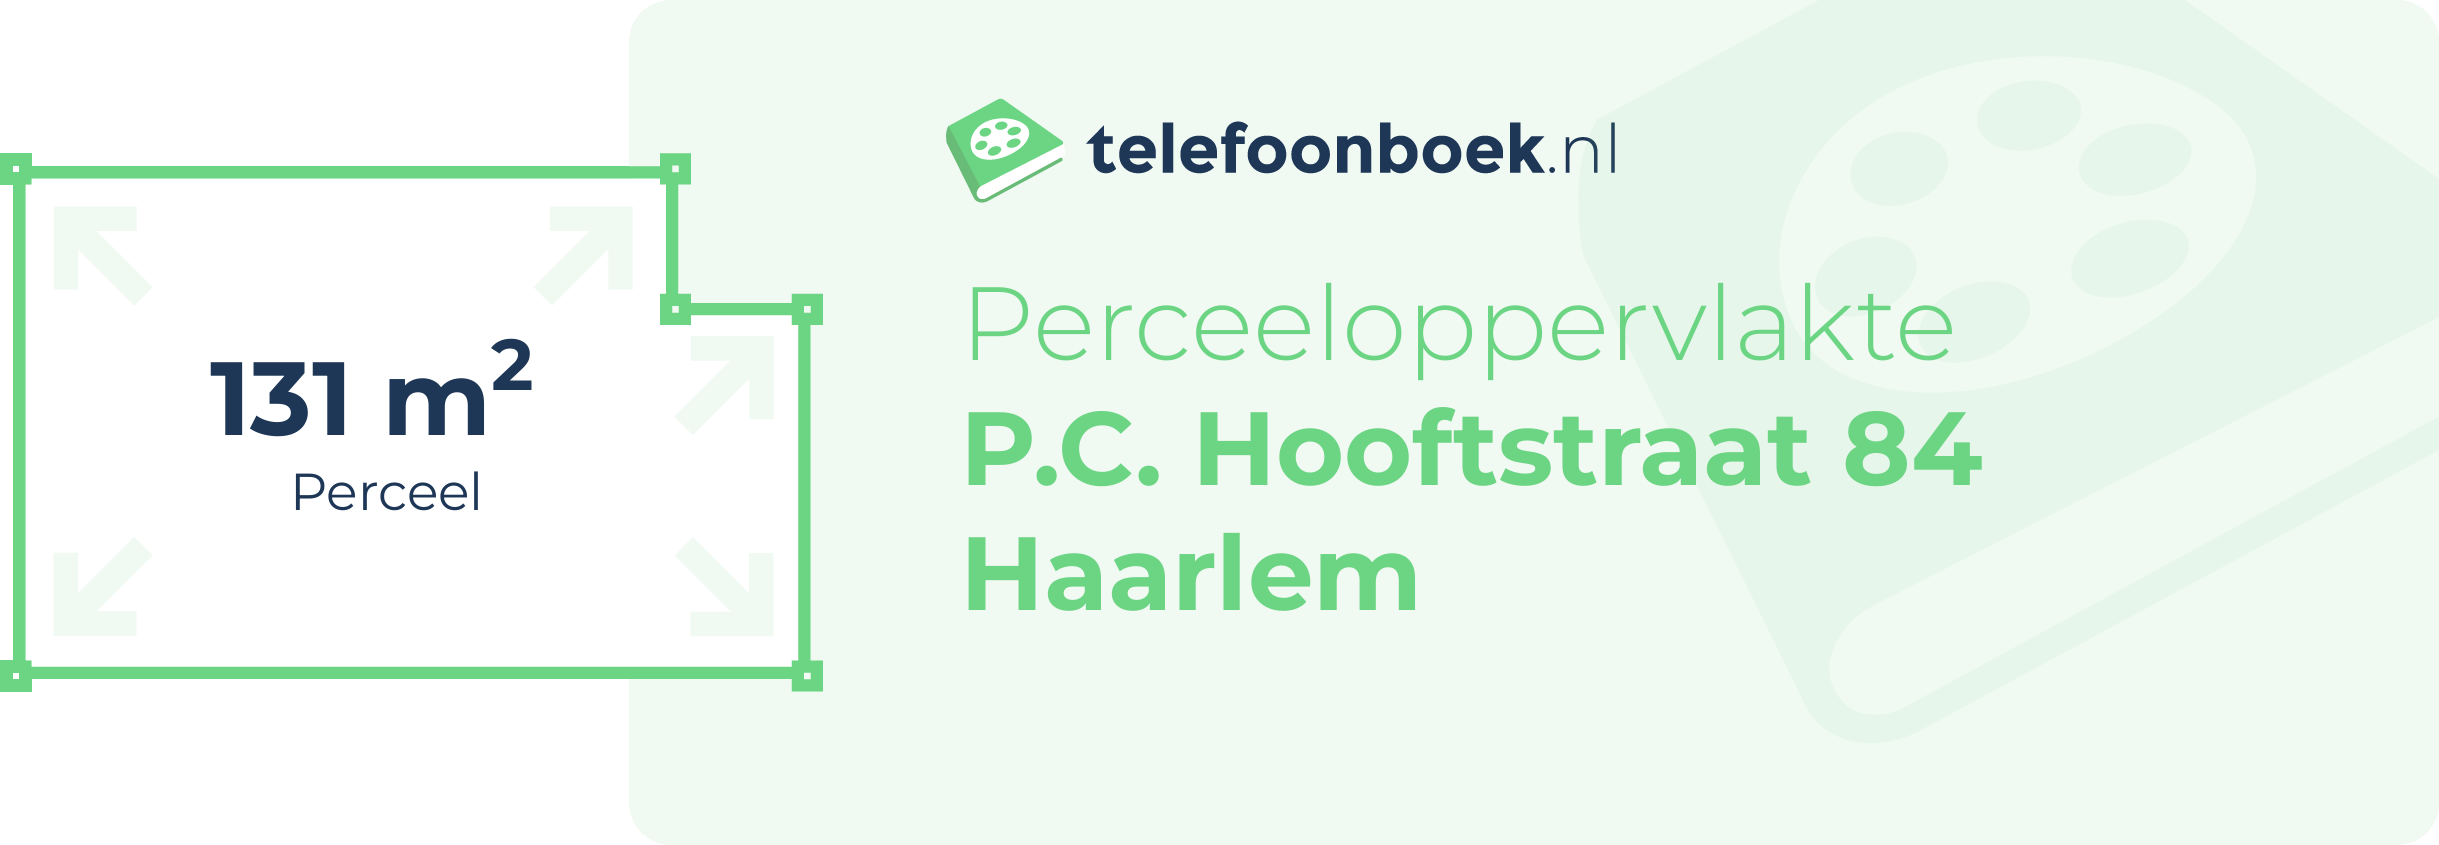 Perceeloppervlakte P.C. Hooftstraat 84 Haarlem